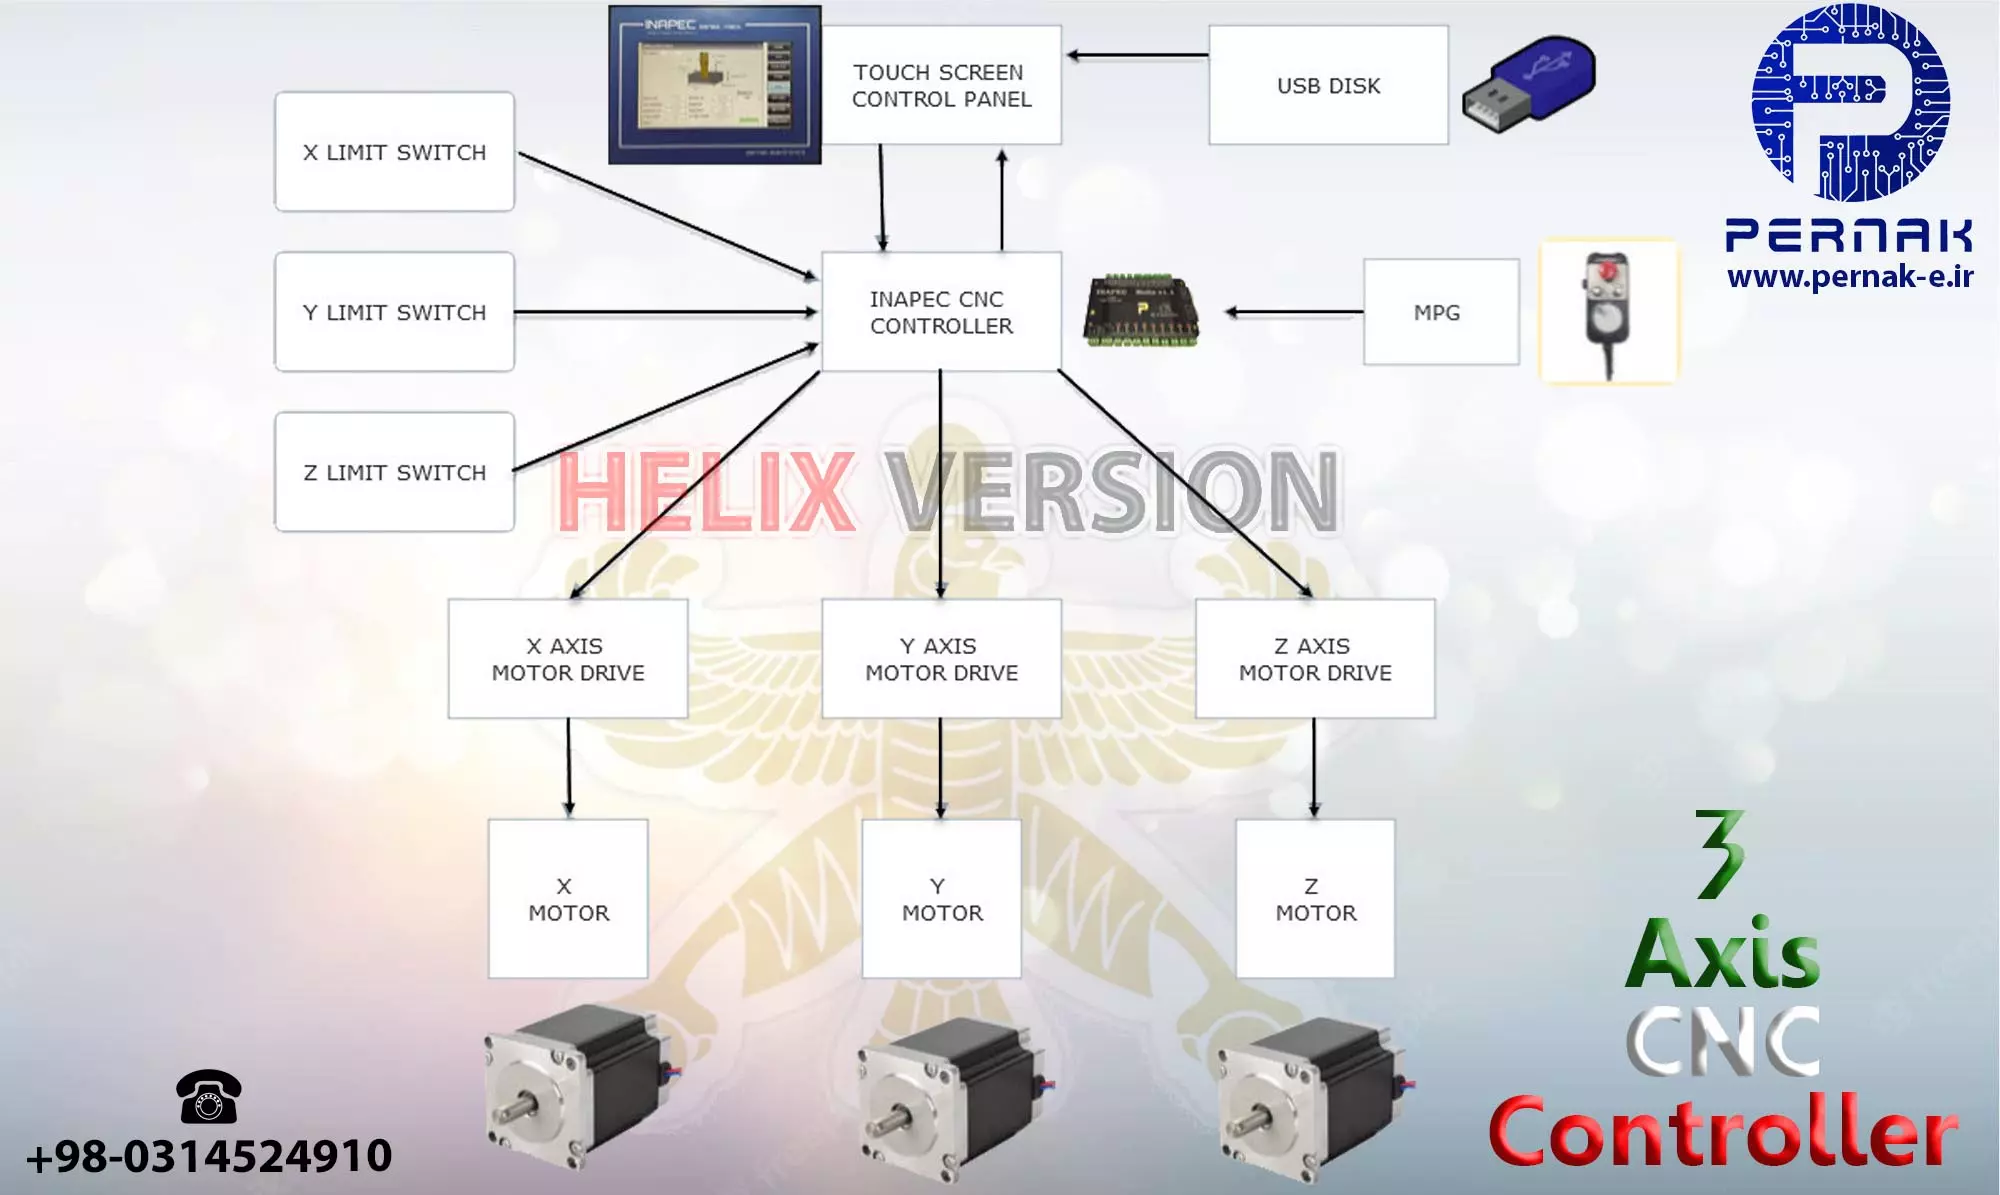 کنترلر CNC - بلوکدیاگرام کنترل کننده دستگاه CNC